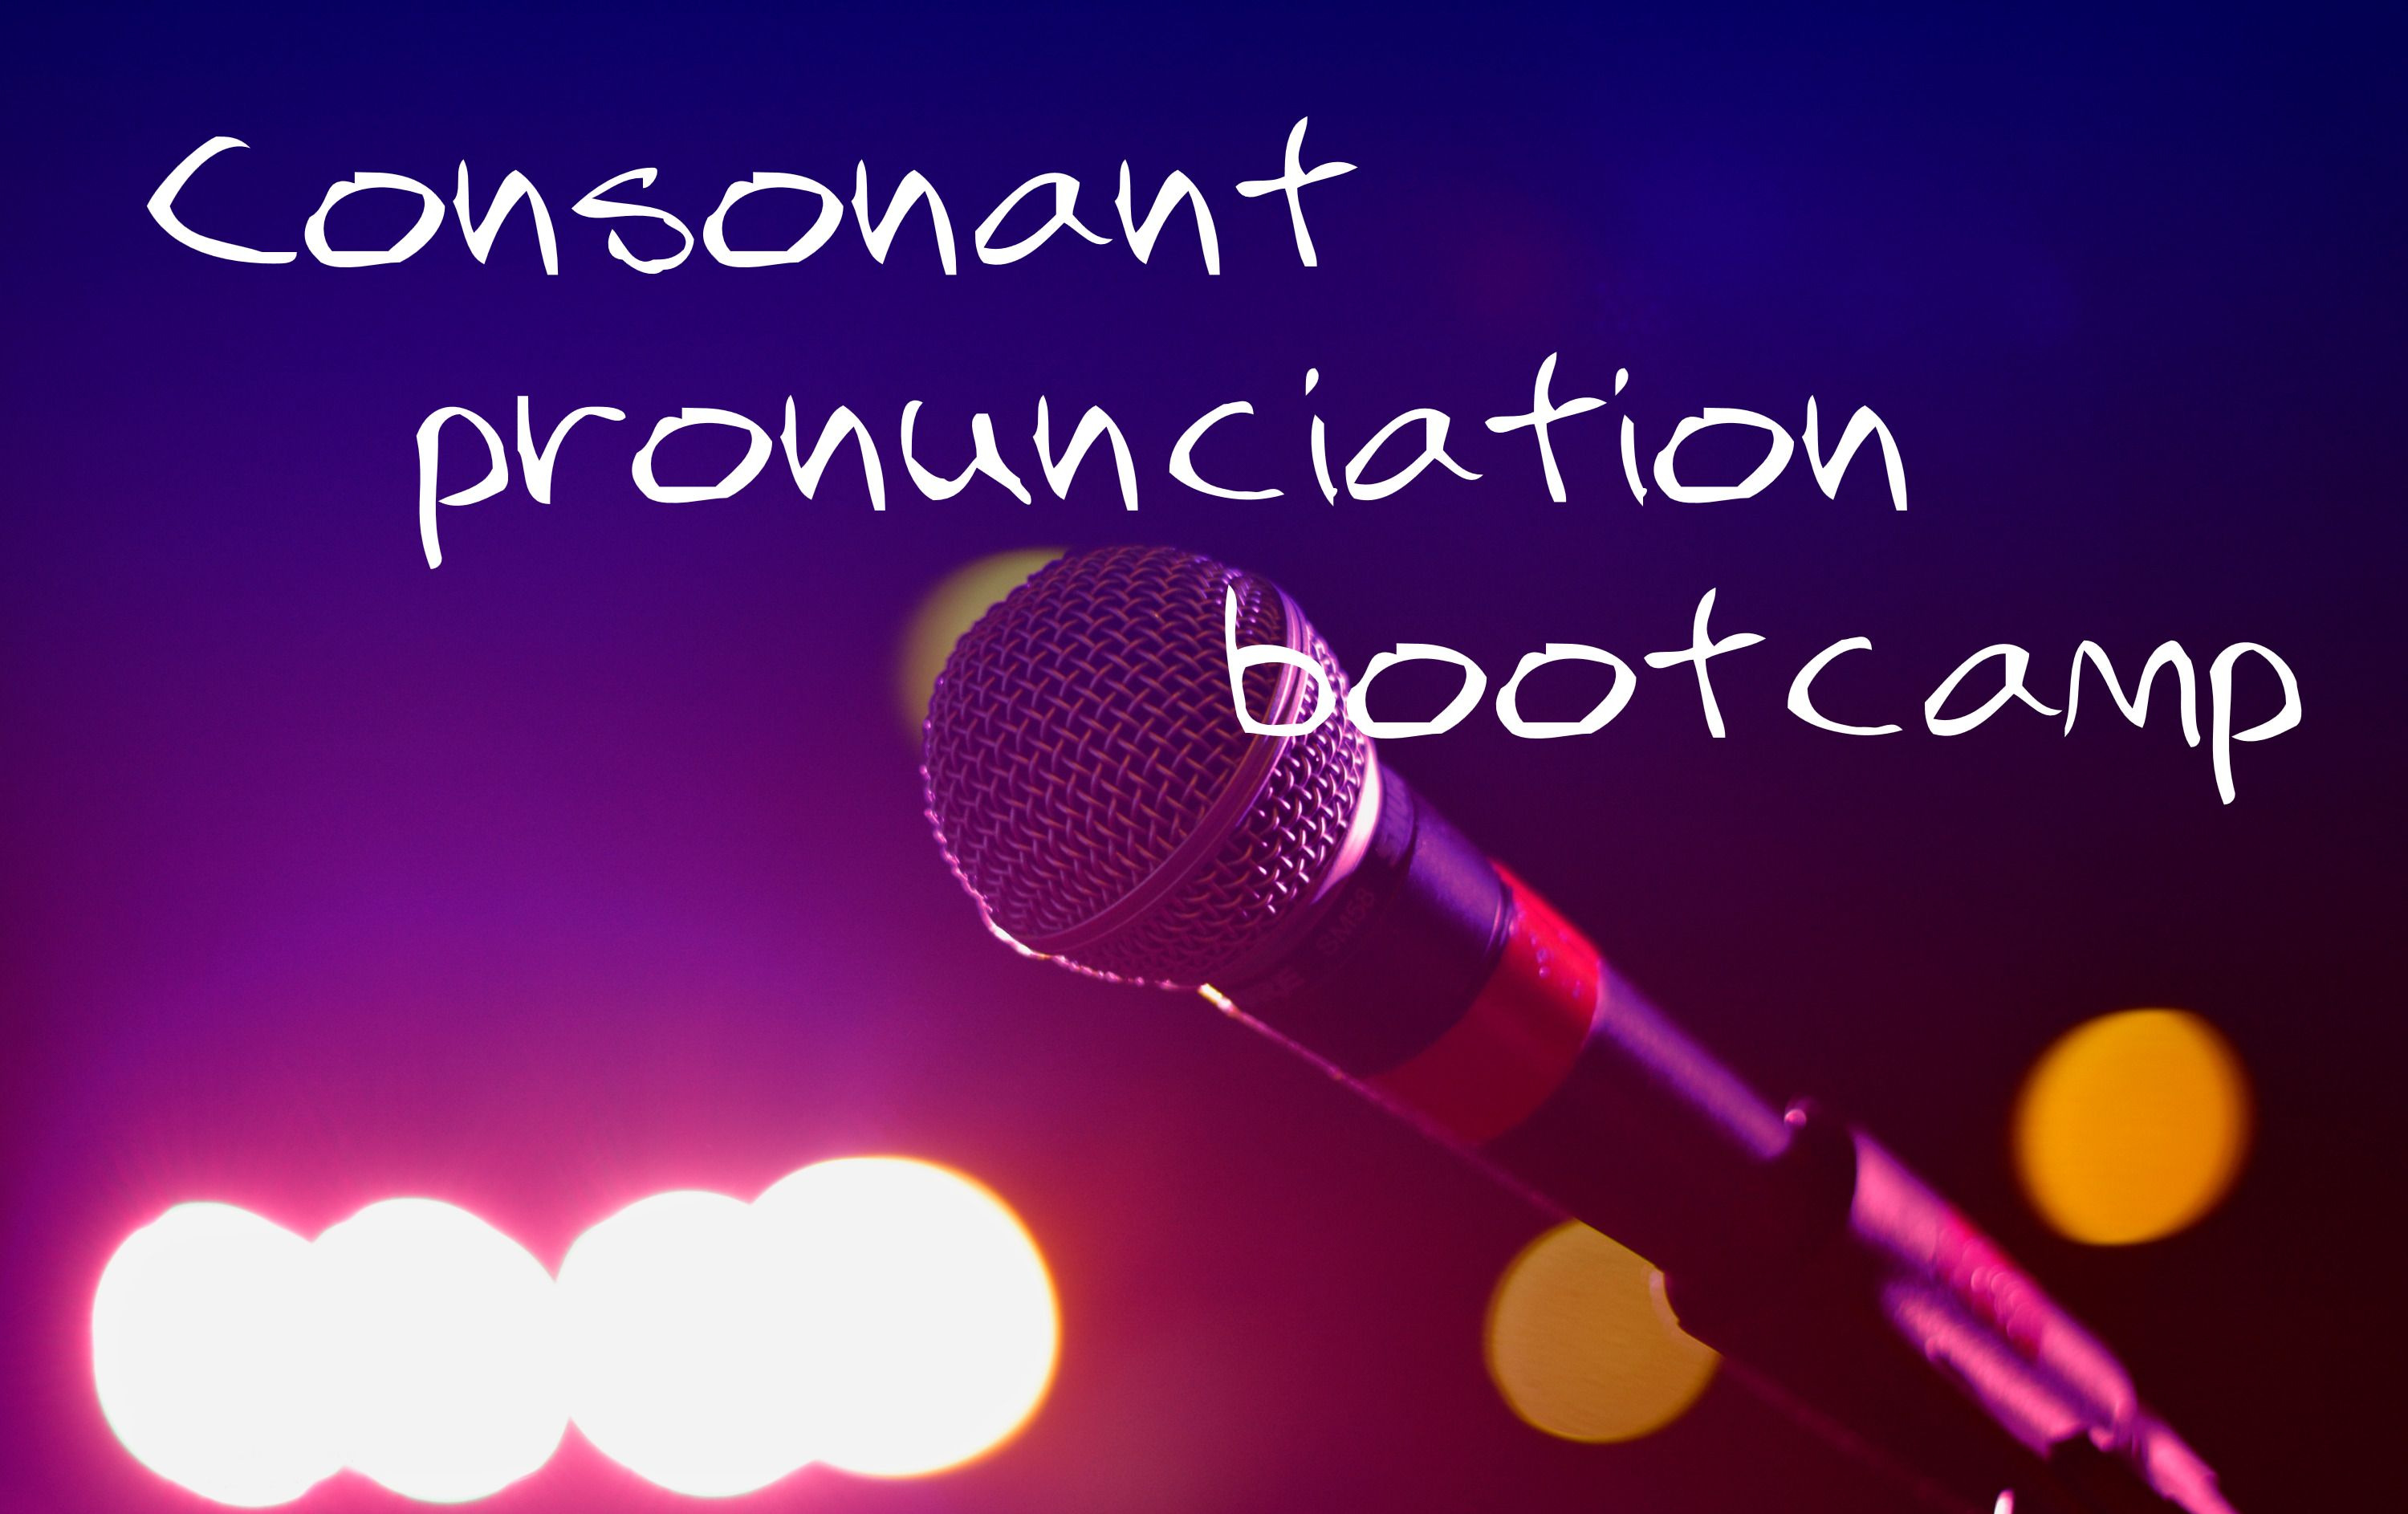 Consonant pronunciation bootcamp